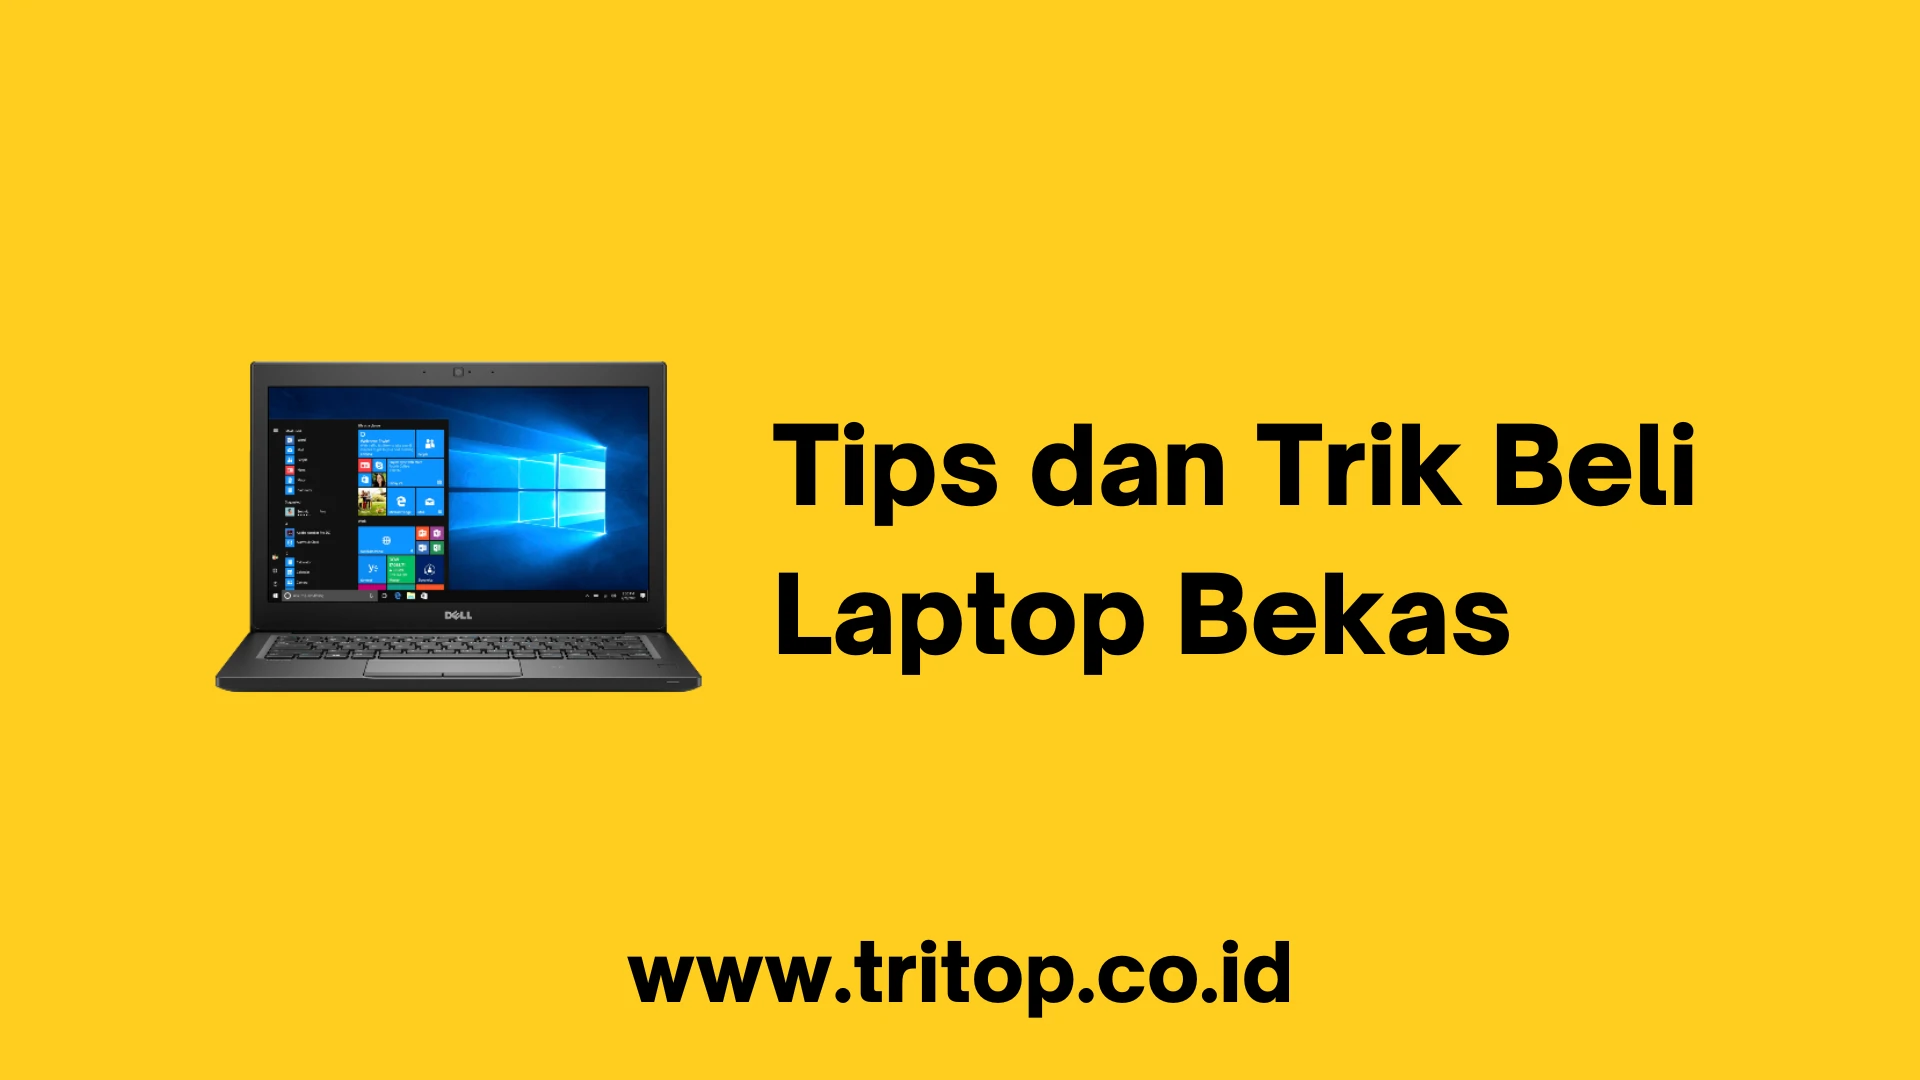 Tips dan Trik Beli Laptop Bekas